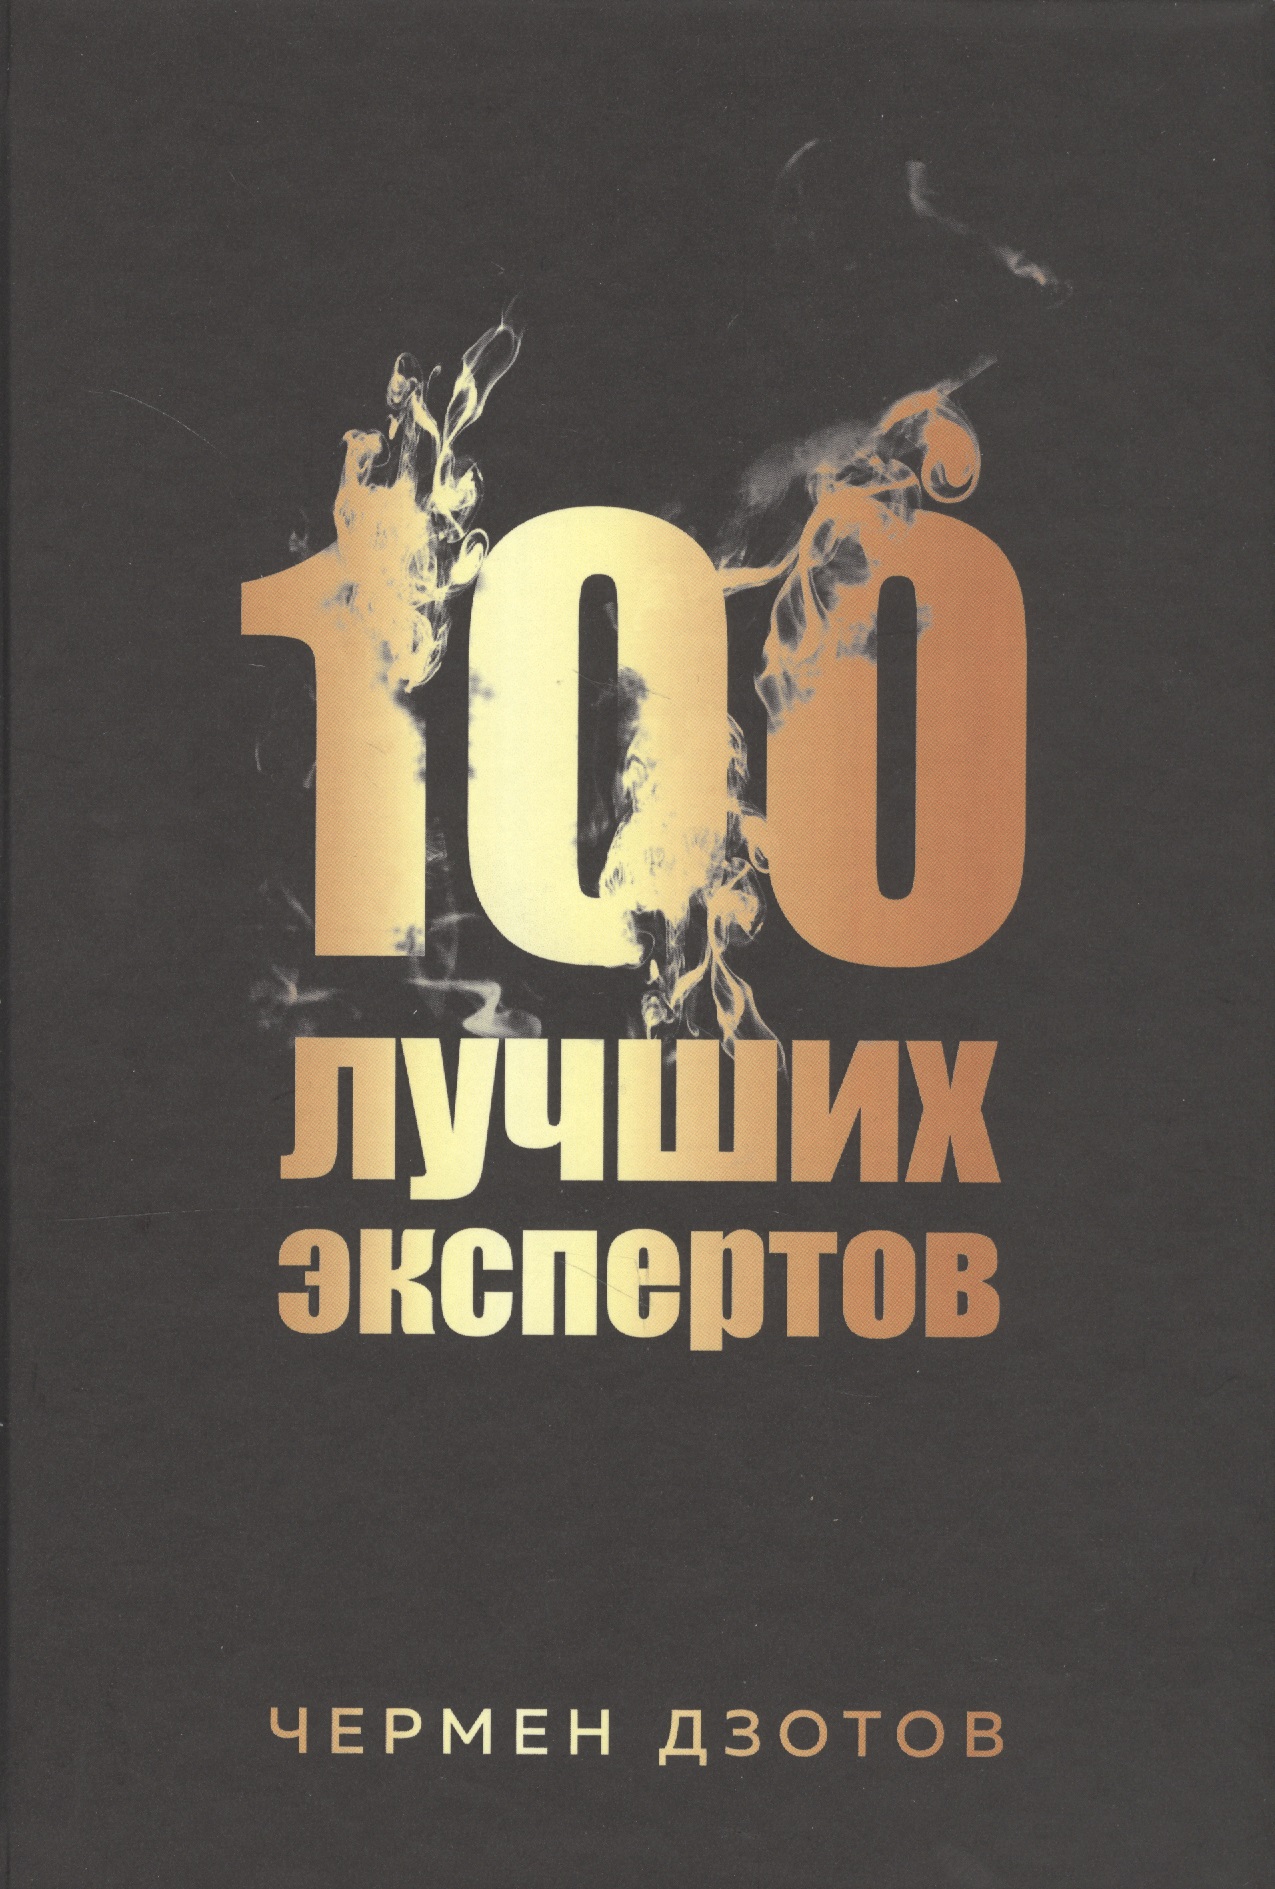 дзотов ч 100 лучших экспертов 2020 Дзотов Чермен 100 лучших экспертов